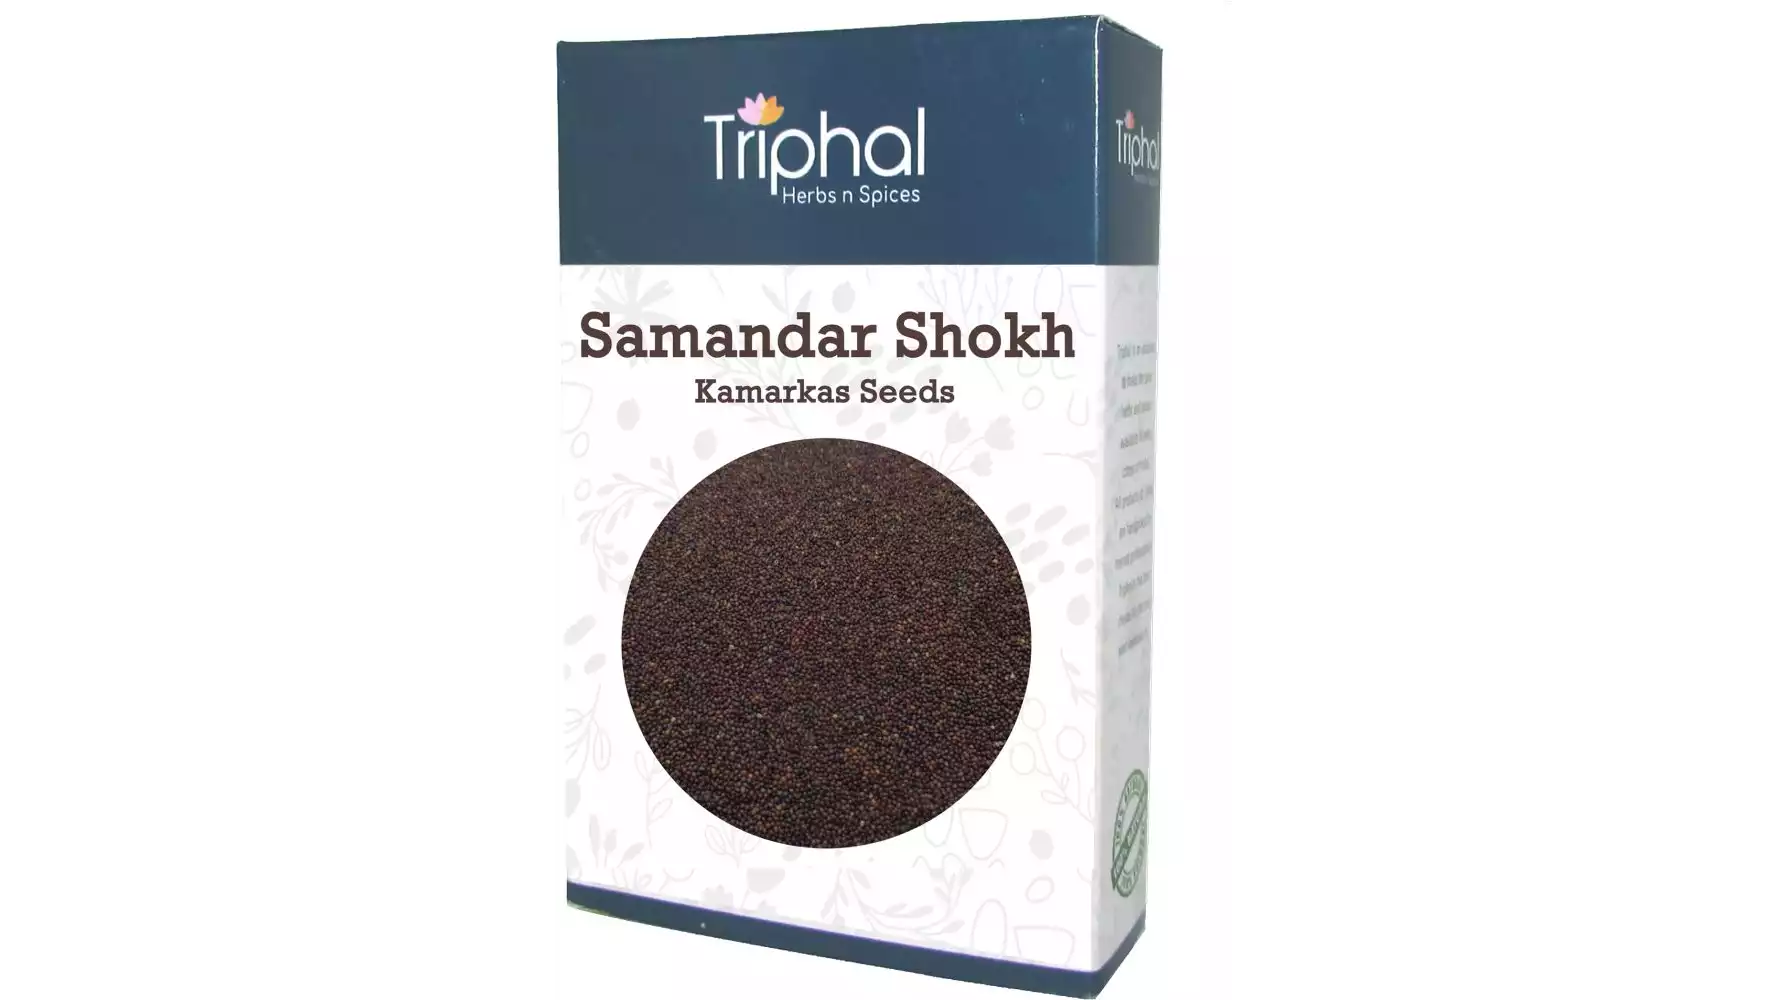 Triphal Samandar Shokh Kamarkas Seeds (200g)